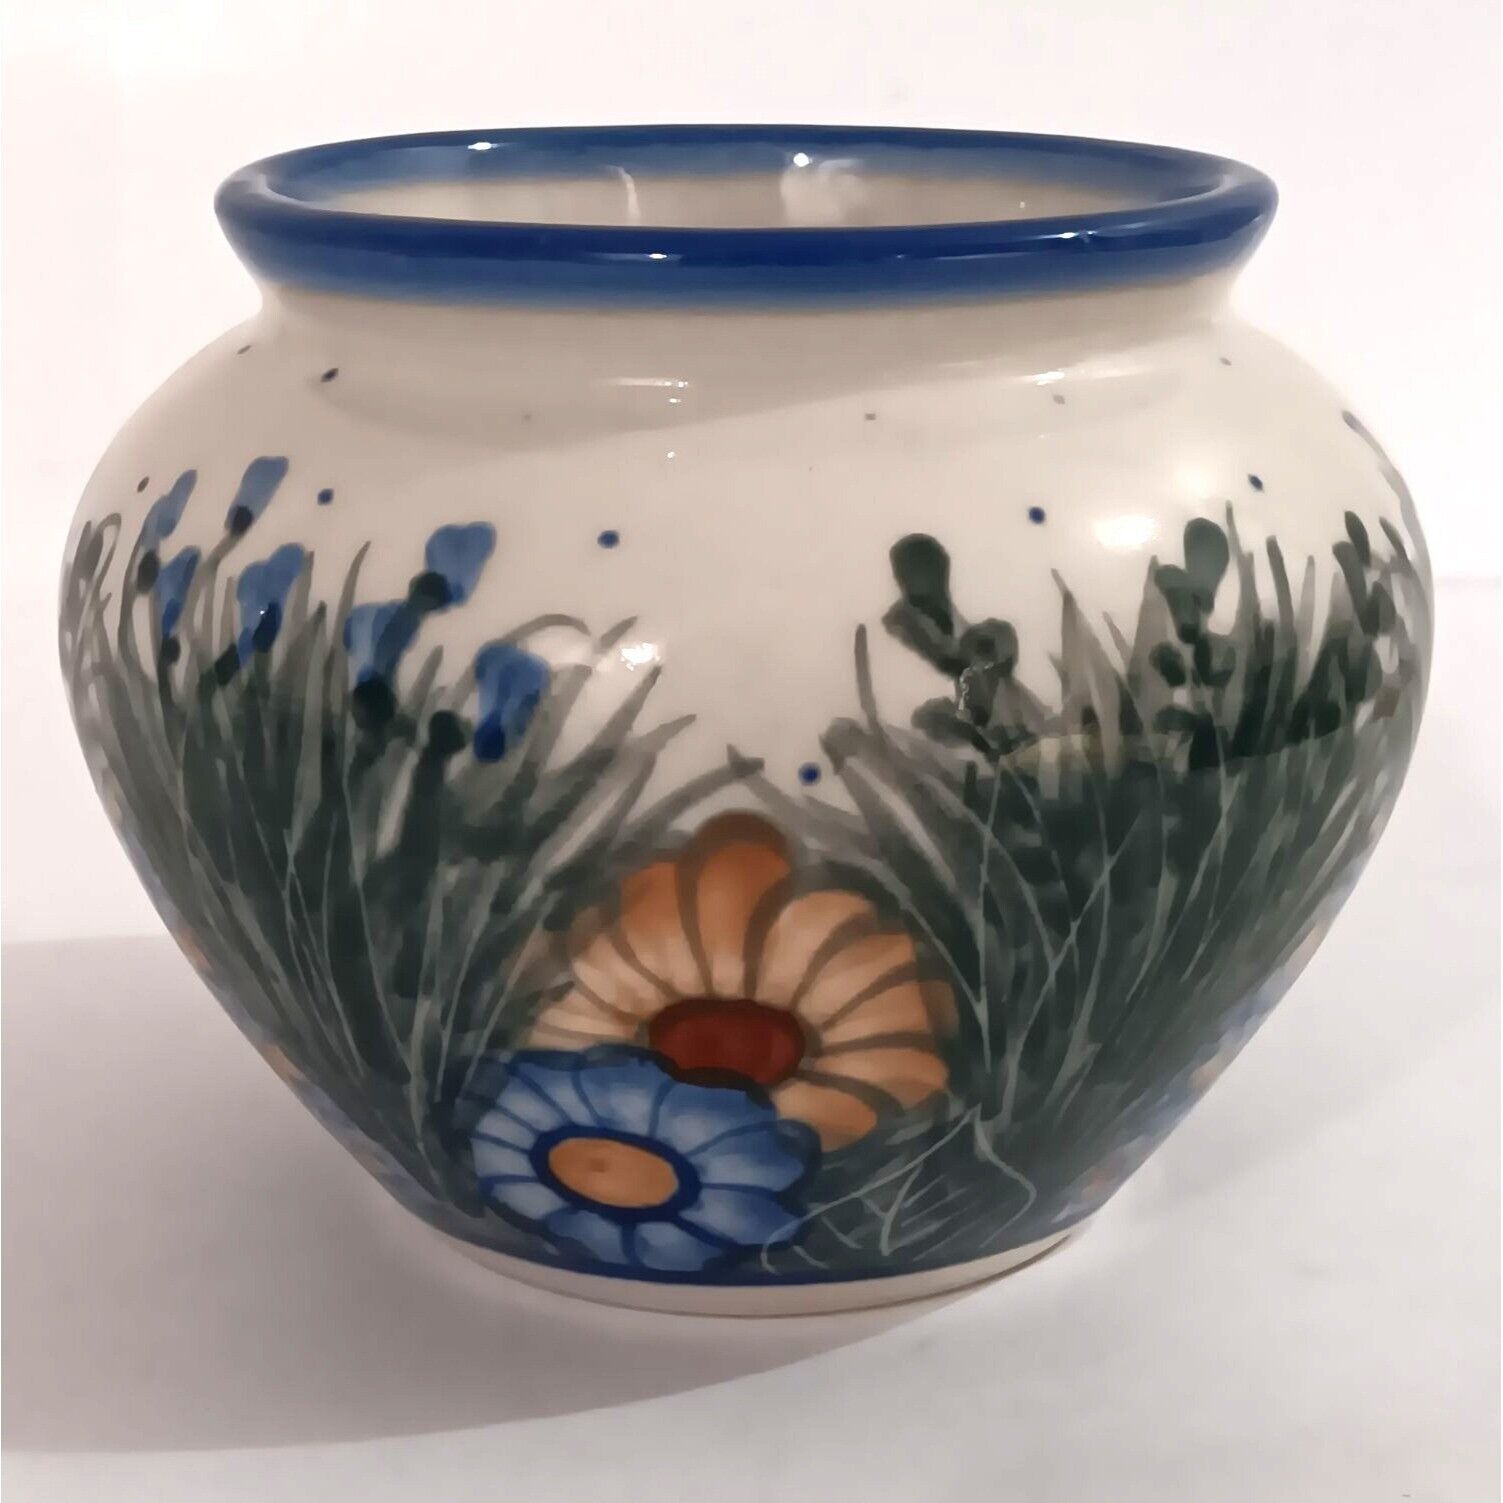 Vintage Unikat Vase Floral Design Hand Painted Signed By Artist Rare Design